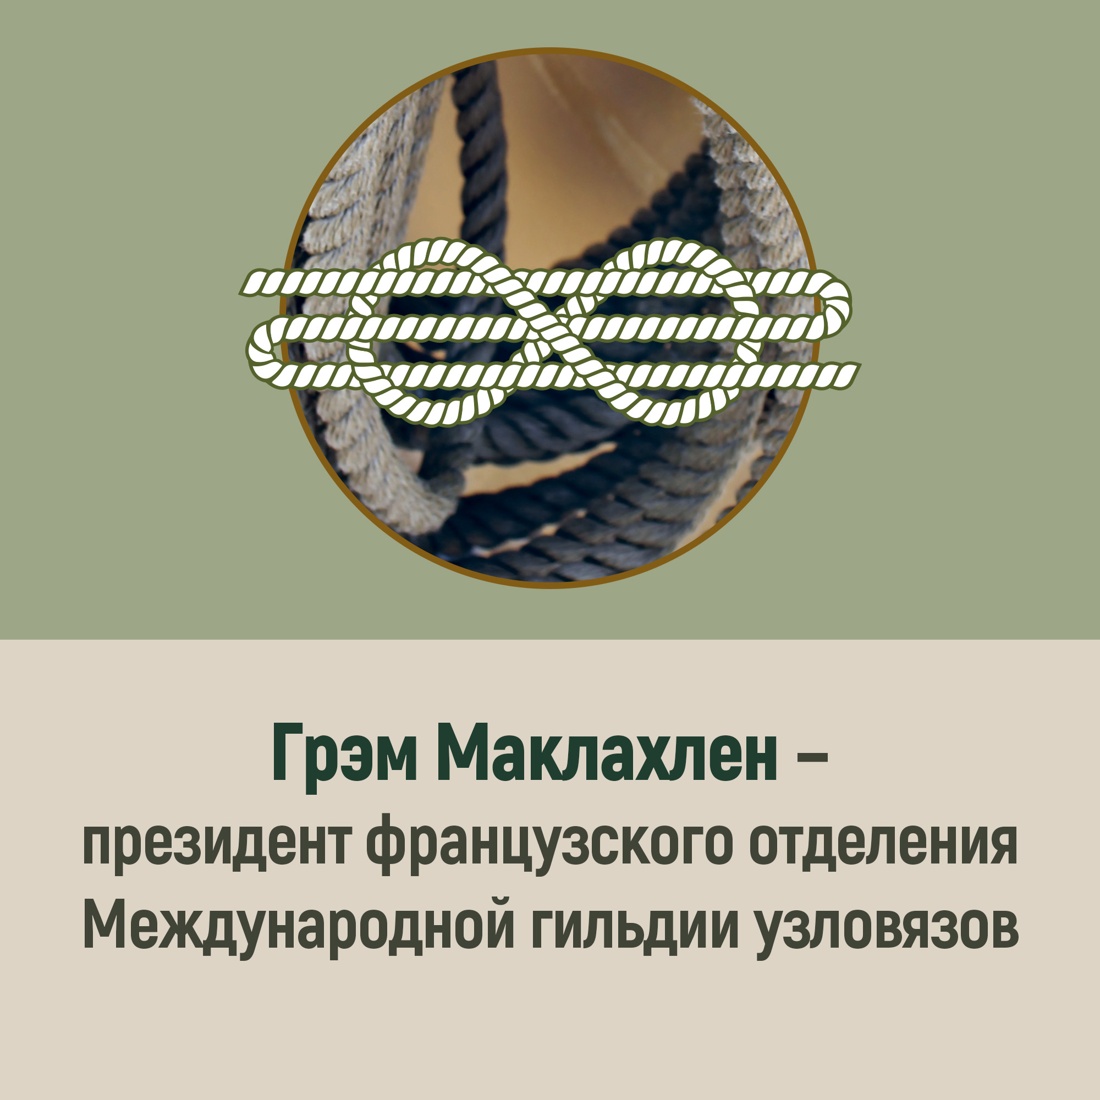 Промо материал к книге "Большая книга узлов. 420 узлов, инструментов и техник плетения" №4